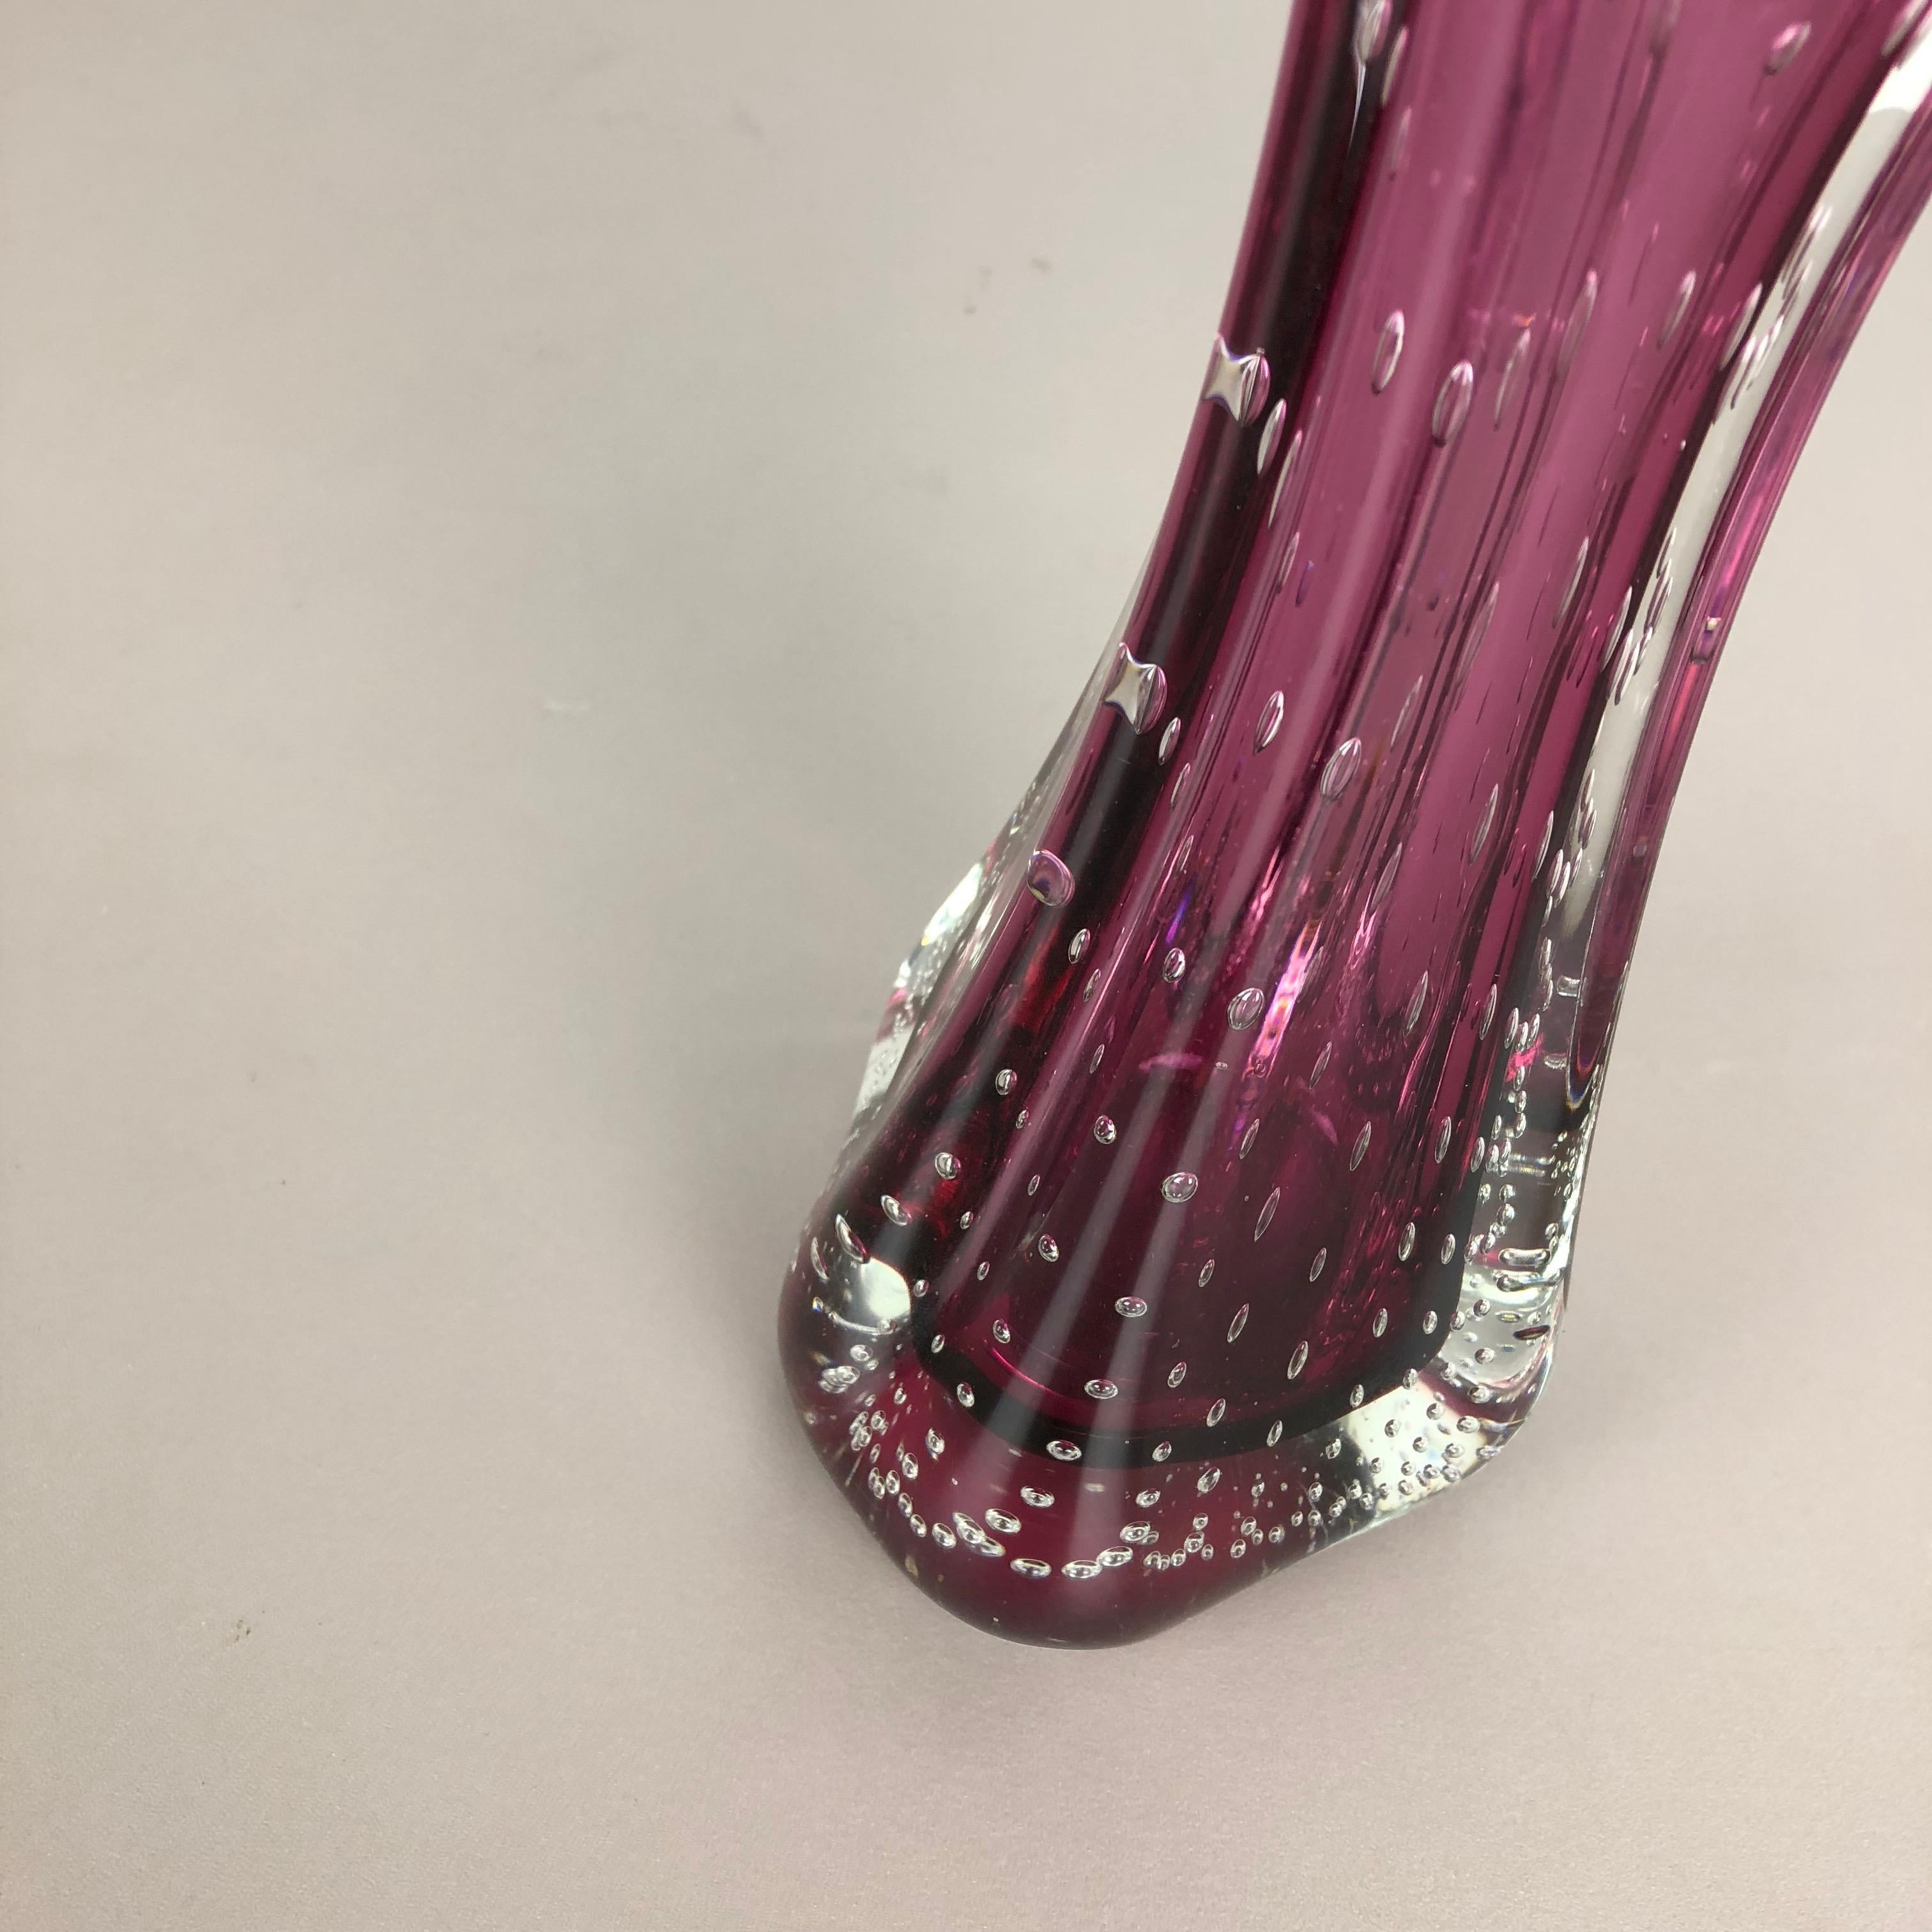 Italian Unique Pink Sommerso Seguso Bullicante Murano Glass Vase, Italy, 1970s